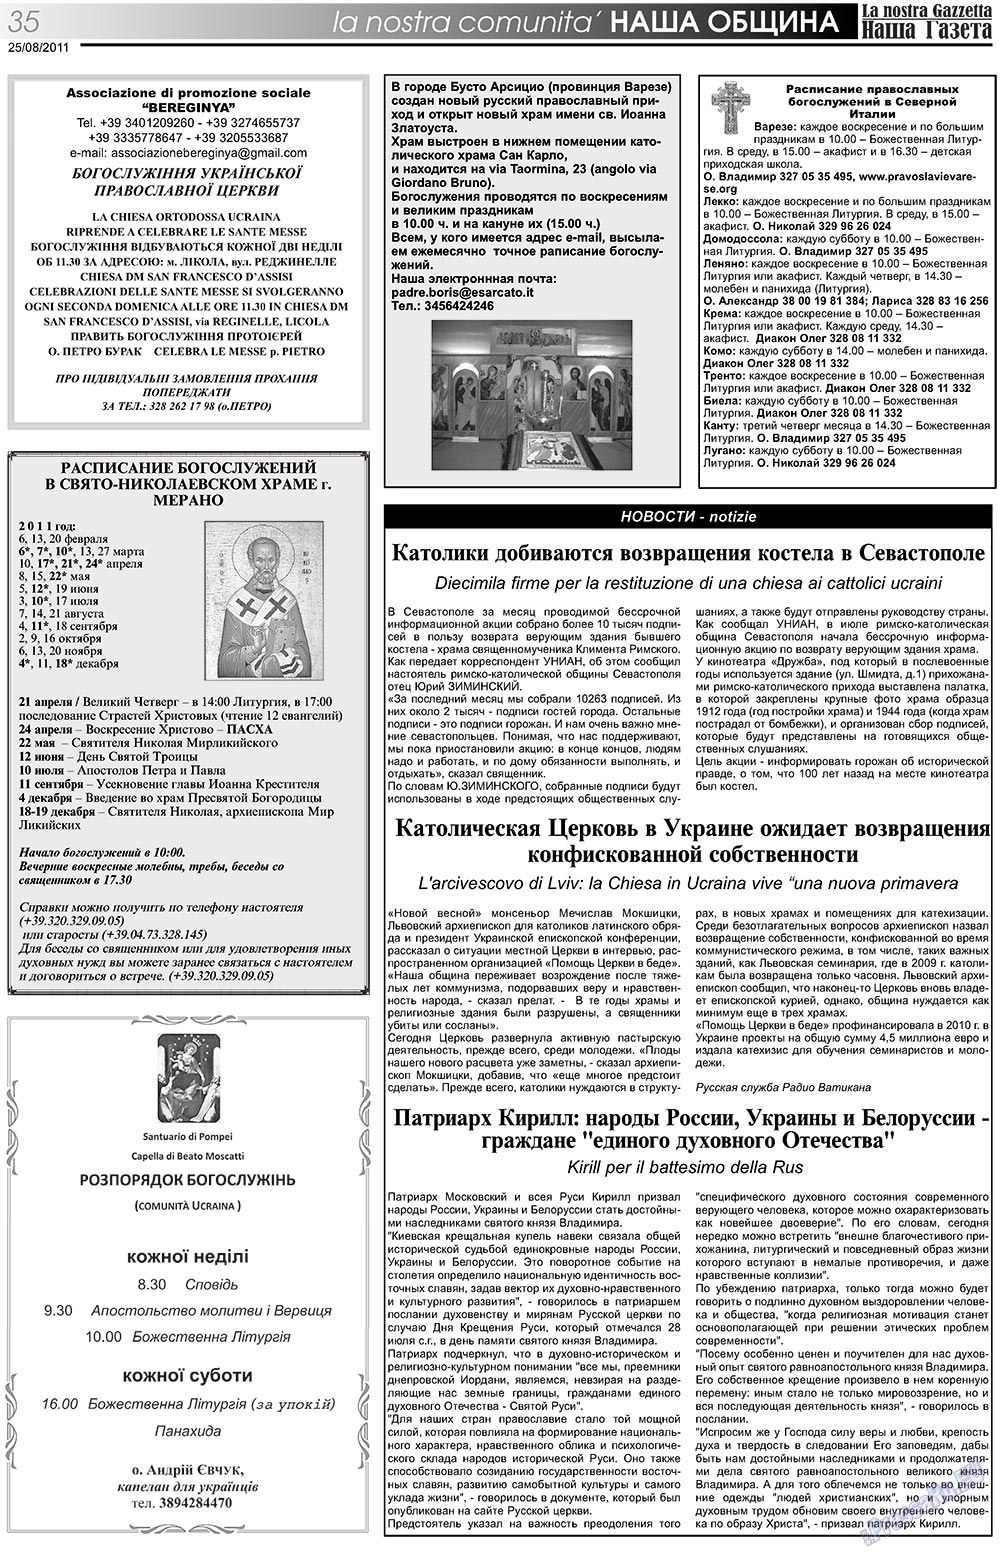 Наша Газета Италия, газета. 2011 №139 стр.35